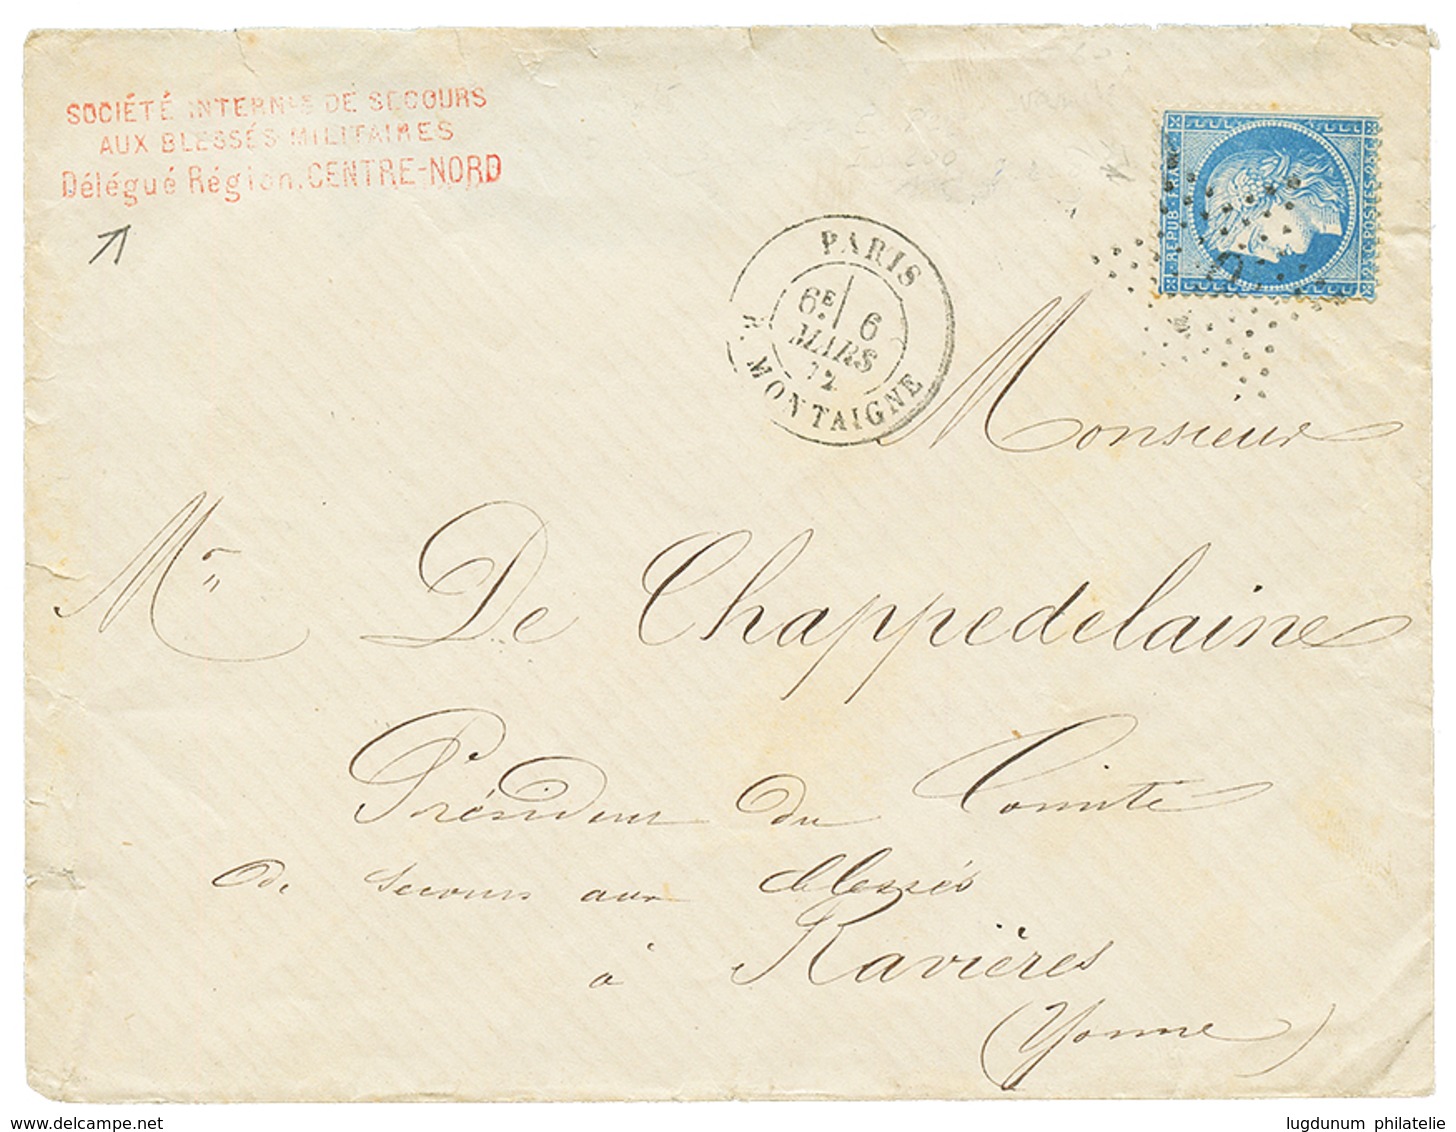 GUERRE 1870 - CROIX-ROUGE : 1872 25c(n°60) Obl. Etoile + Rare Cachet Rouge SOCIETE INTERNle DE SECOURS MILITAIRES / DELE - Guerre De 1870